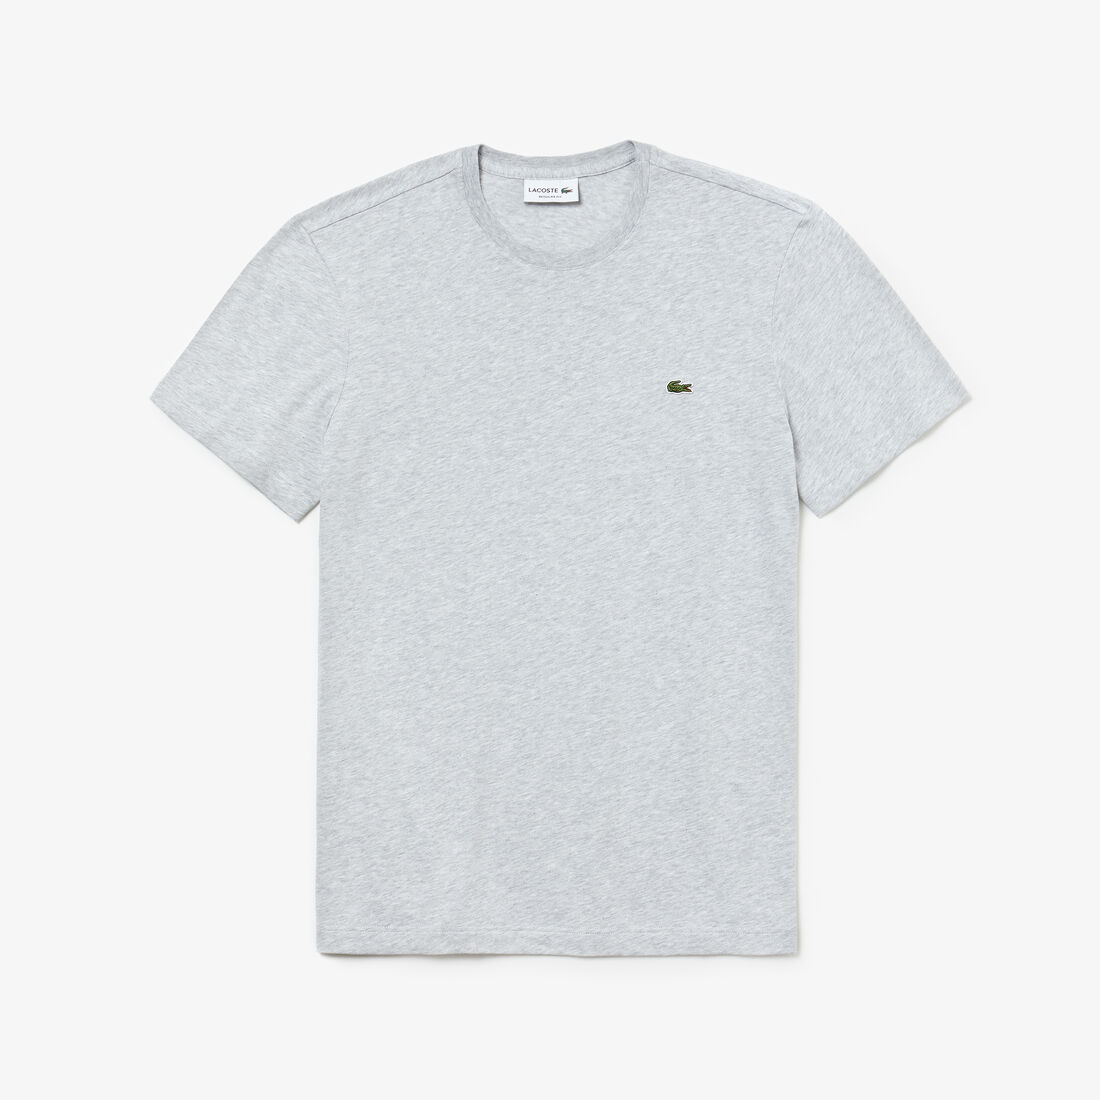 Men’s Crew Neck Cotton T-shirt